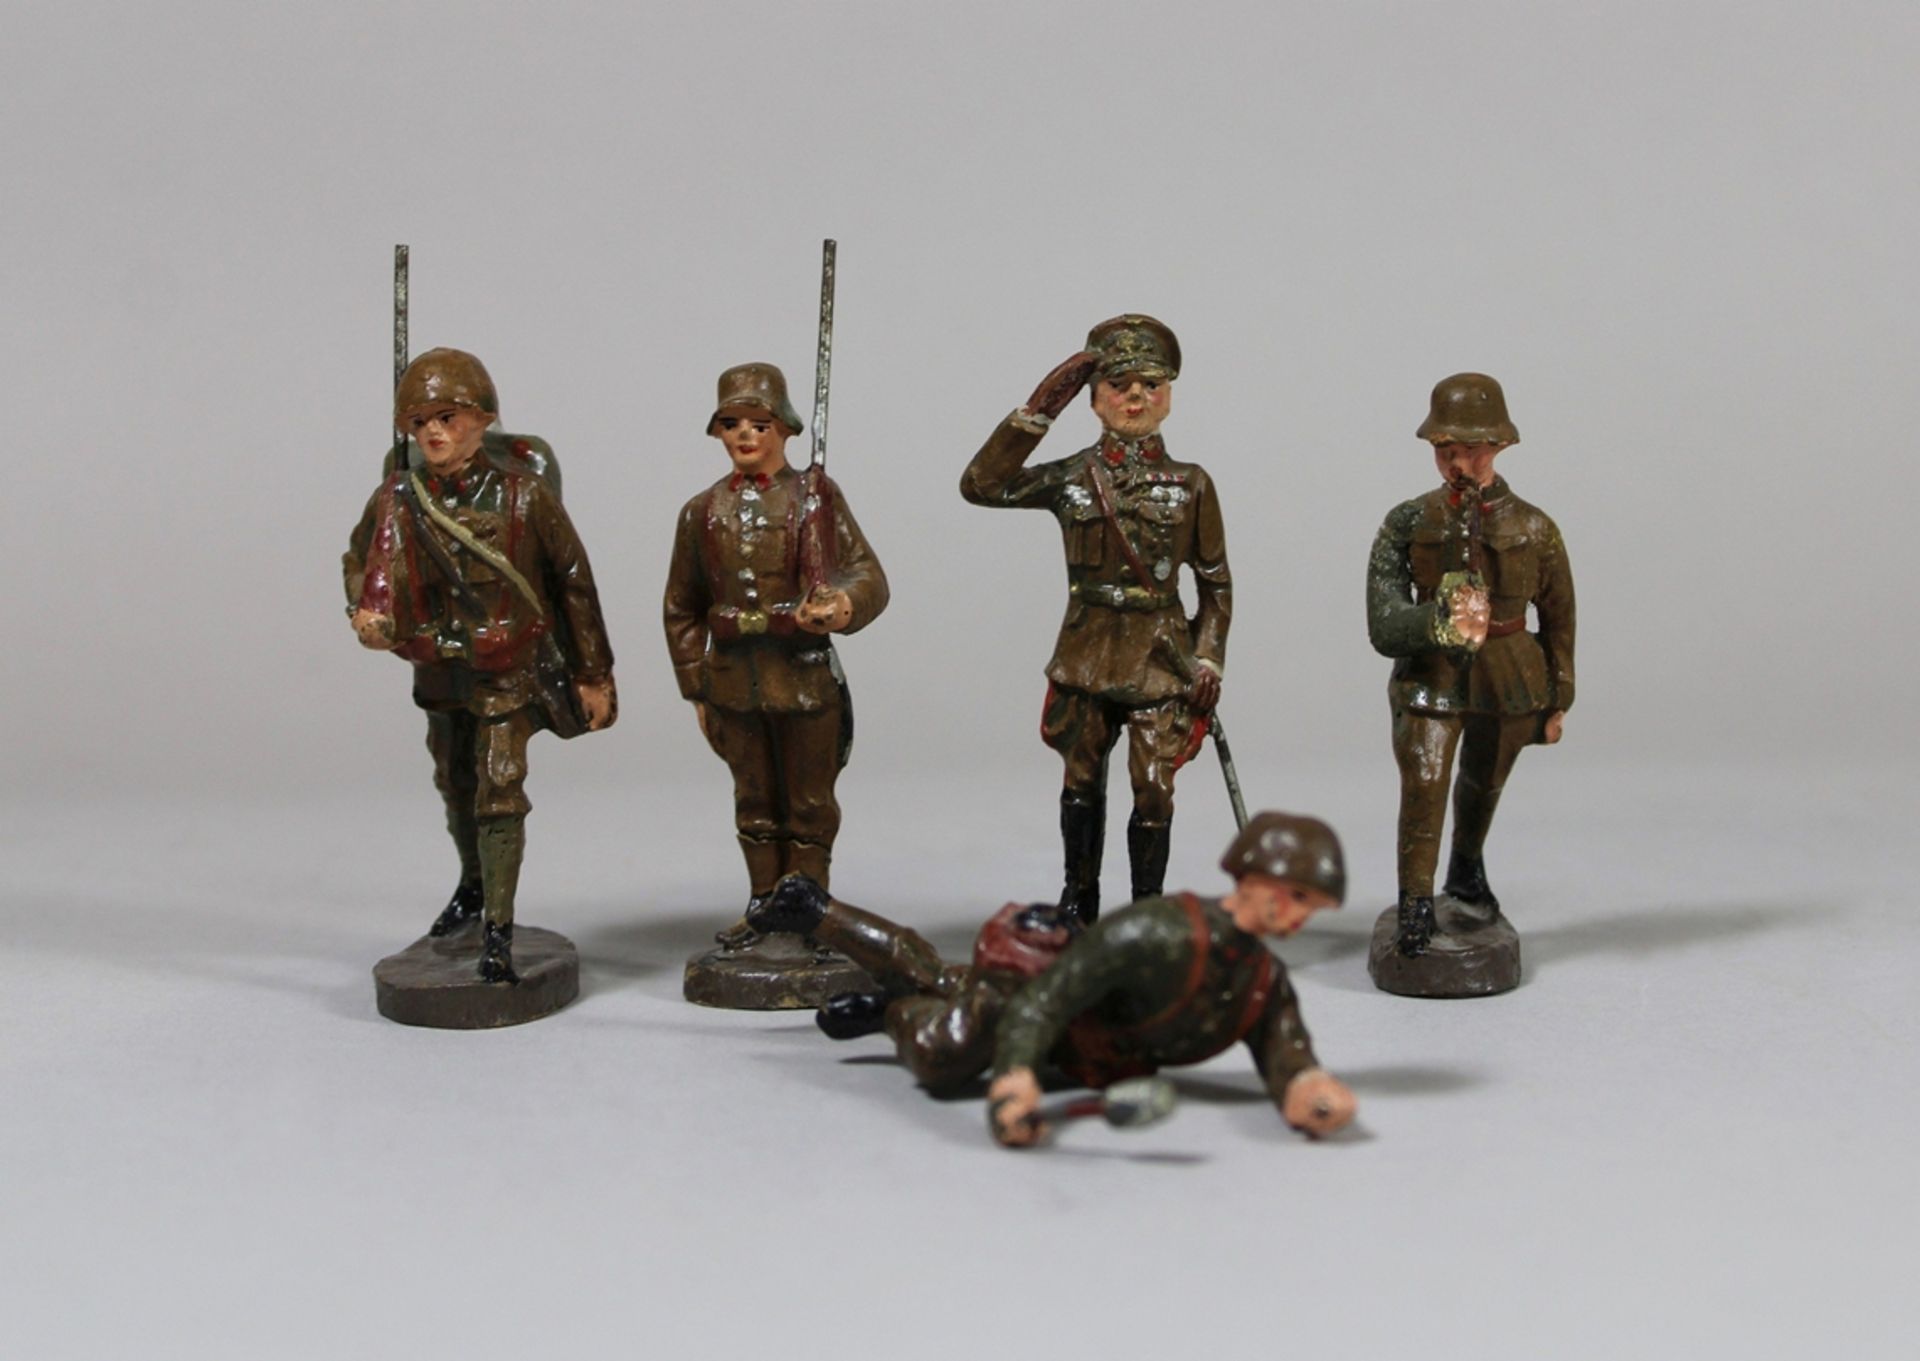 Spielzeugsoldaten. Vermutlich 1. Weltkrieg. 5 Stück aus Elastolin. Altersbedingter Zustand. Diverse